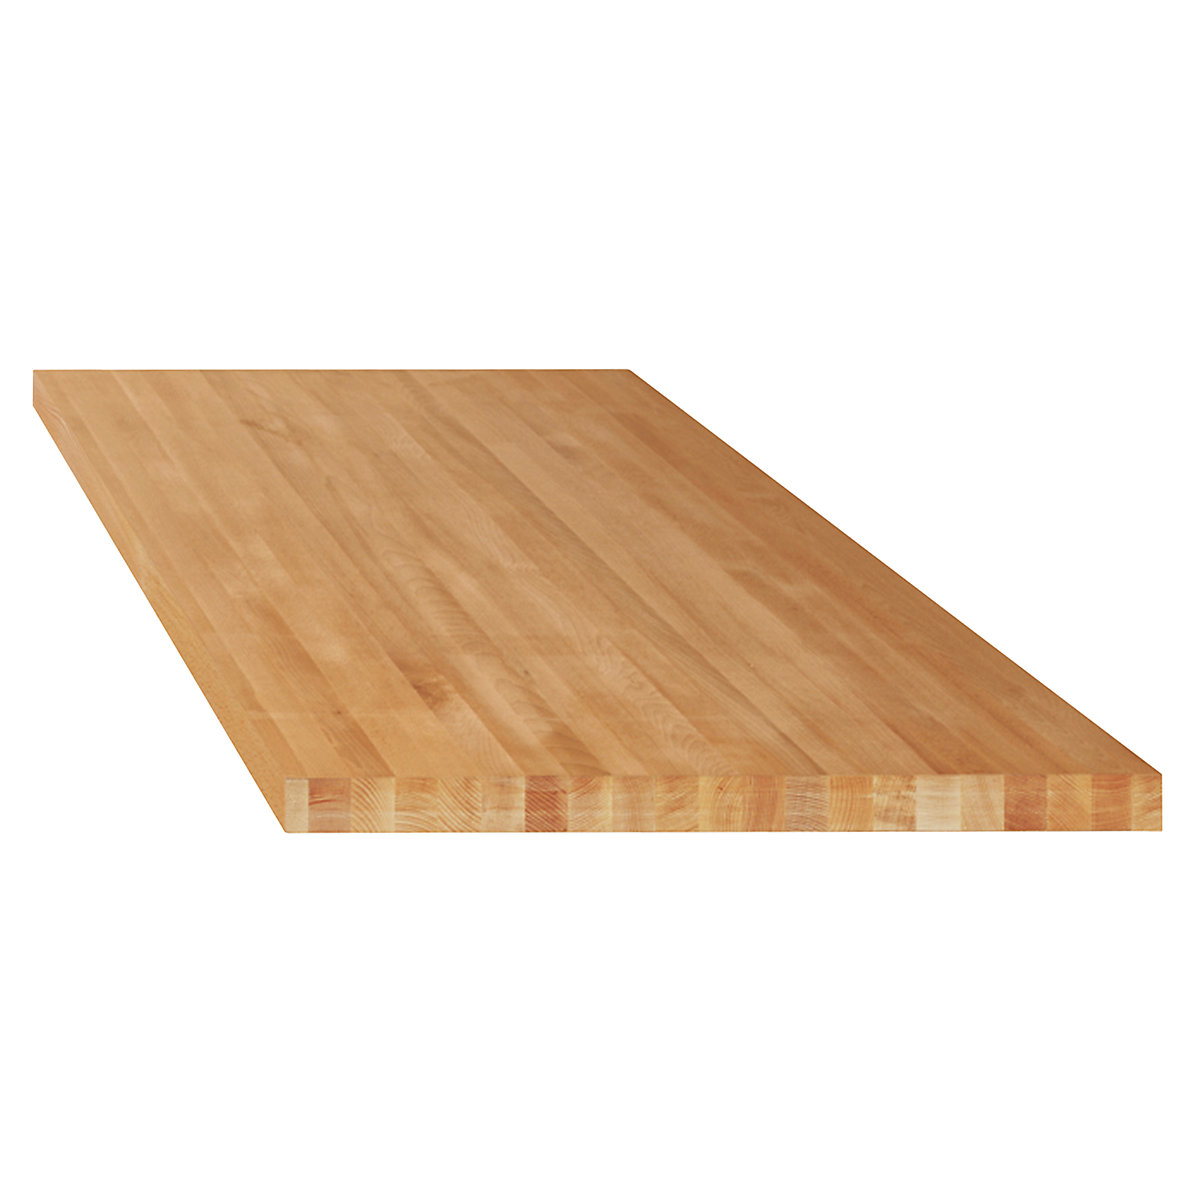 Delovna plošča za modulne delovne mize – LISTA, masivni bukov les, ŠxG 2000 x 750 mm, debelina 50 mm-6